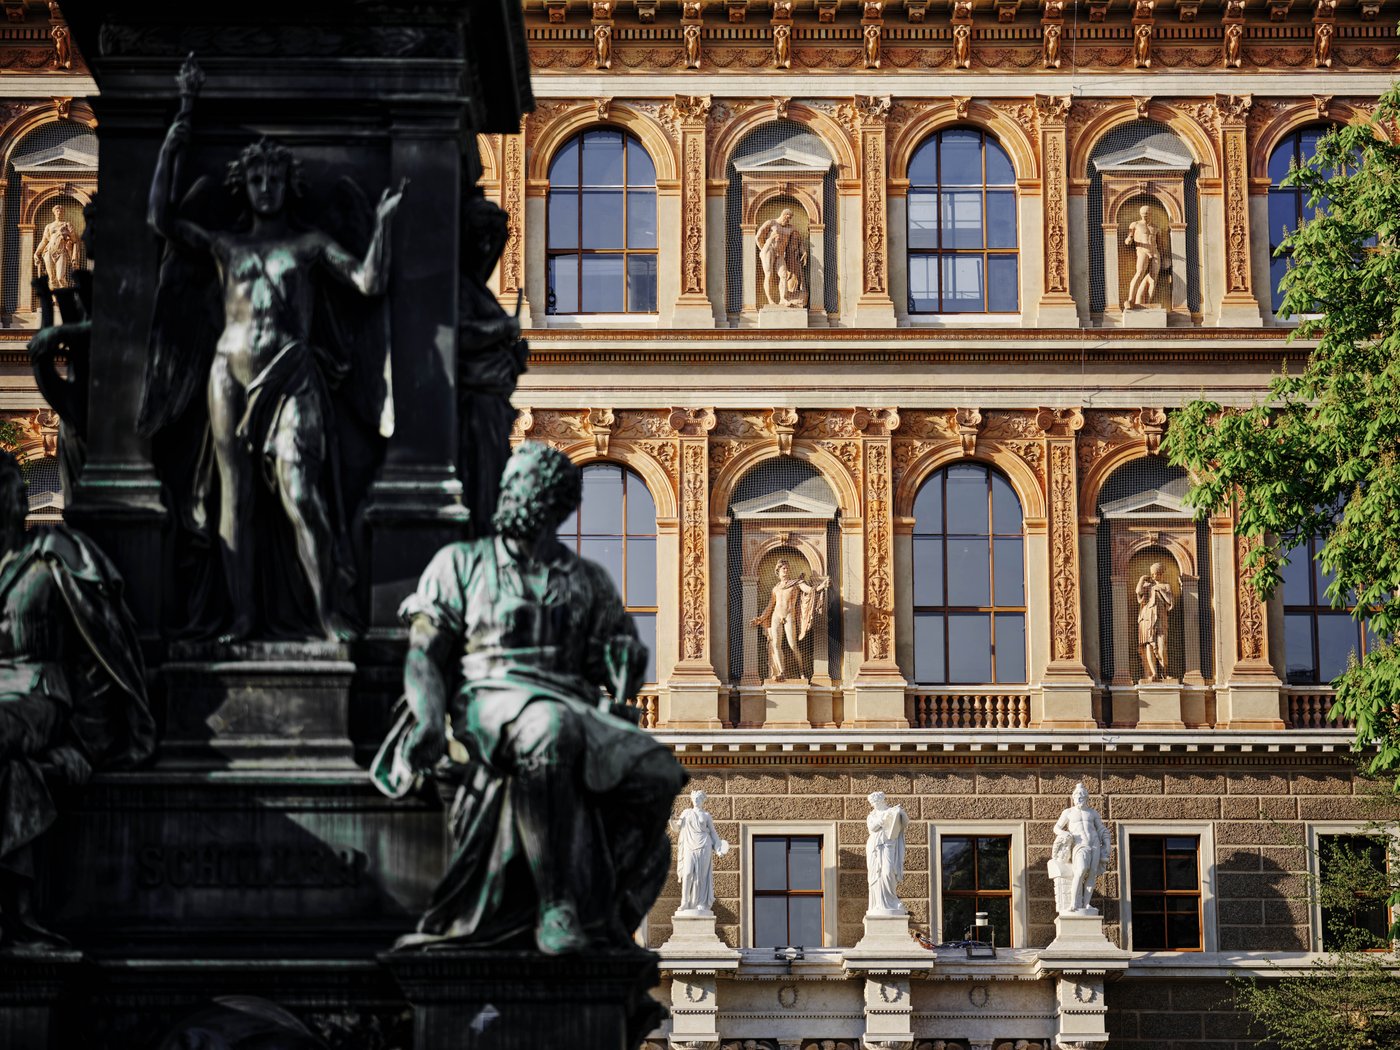 Nahaufnahme eines hisotirschen Gebäudes, Ansicht der Fassade mit Bogenfenster und Statuen in Giebeln, im Vordergrund unscharf Detail einer Bronzestatue